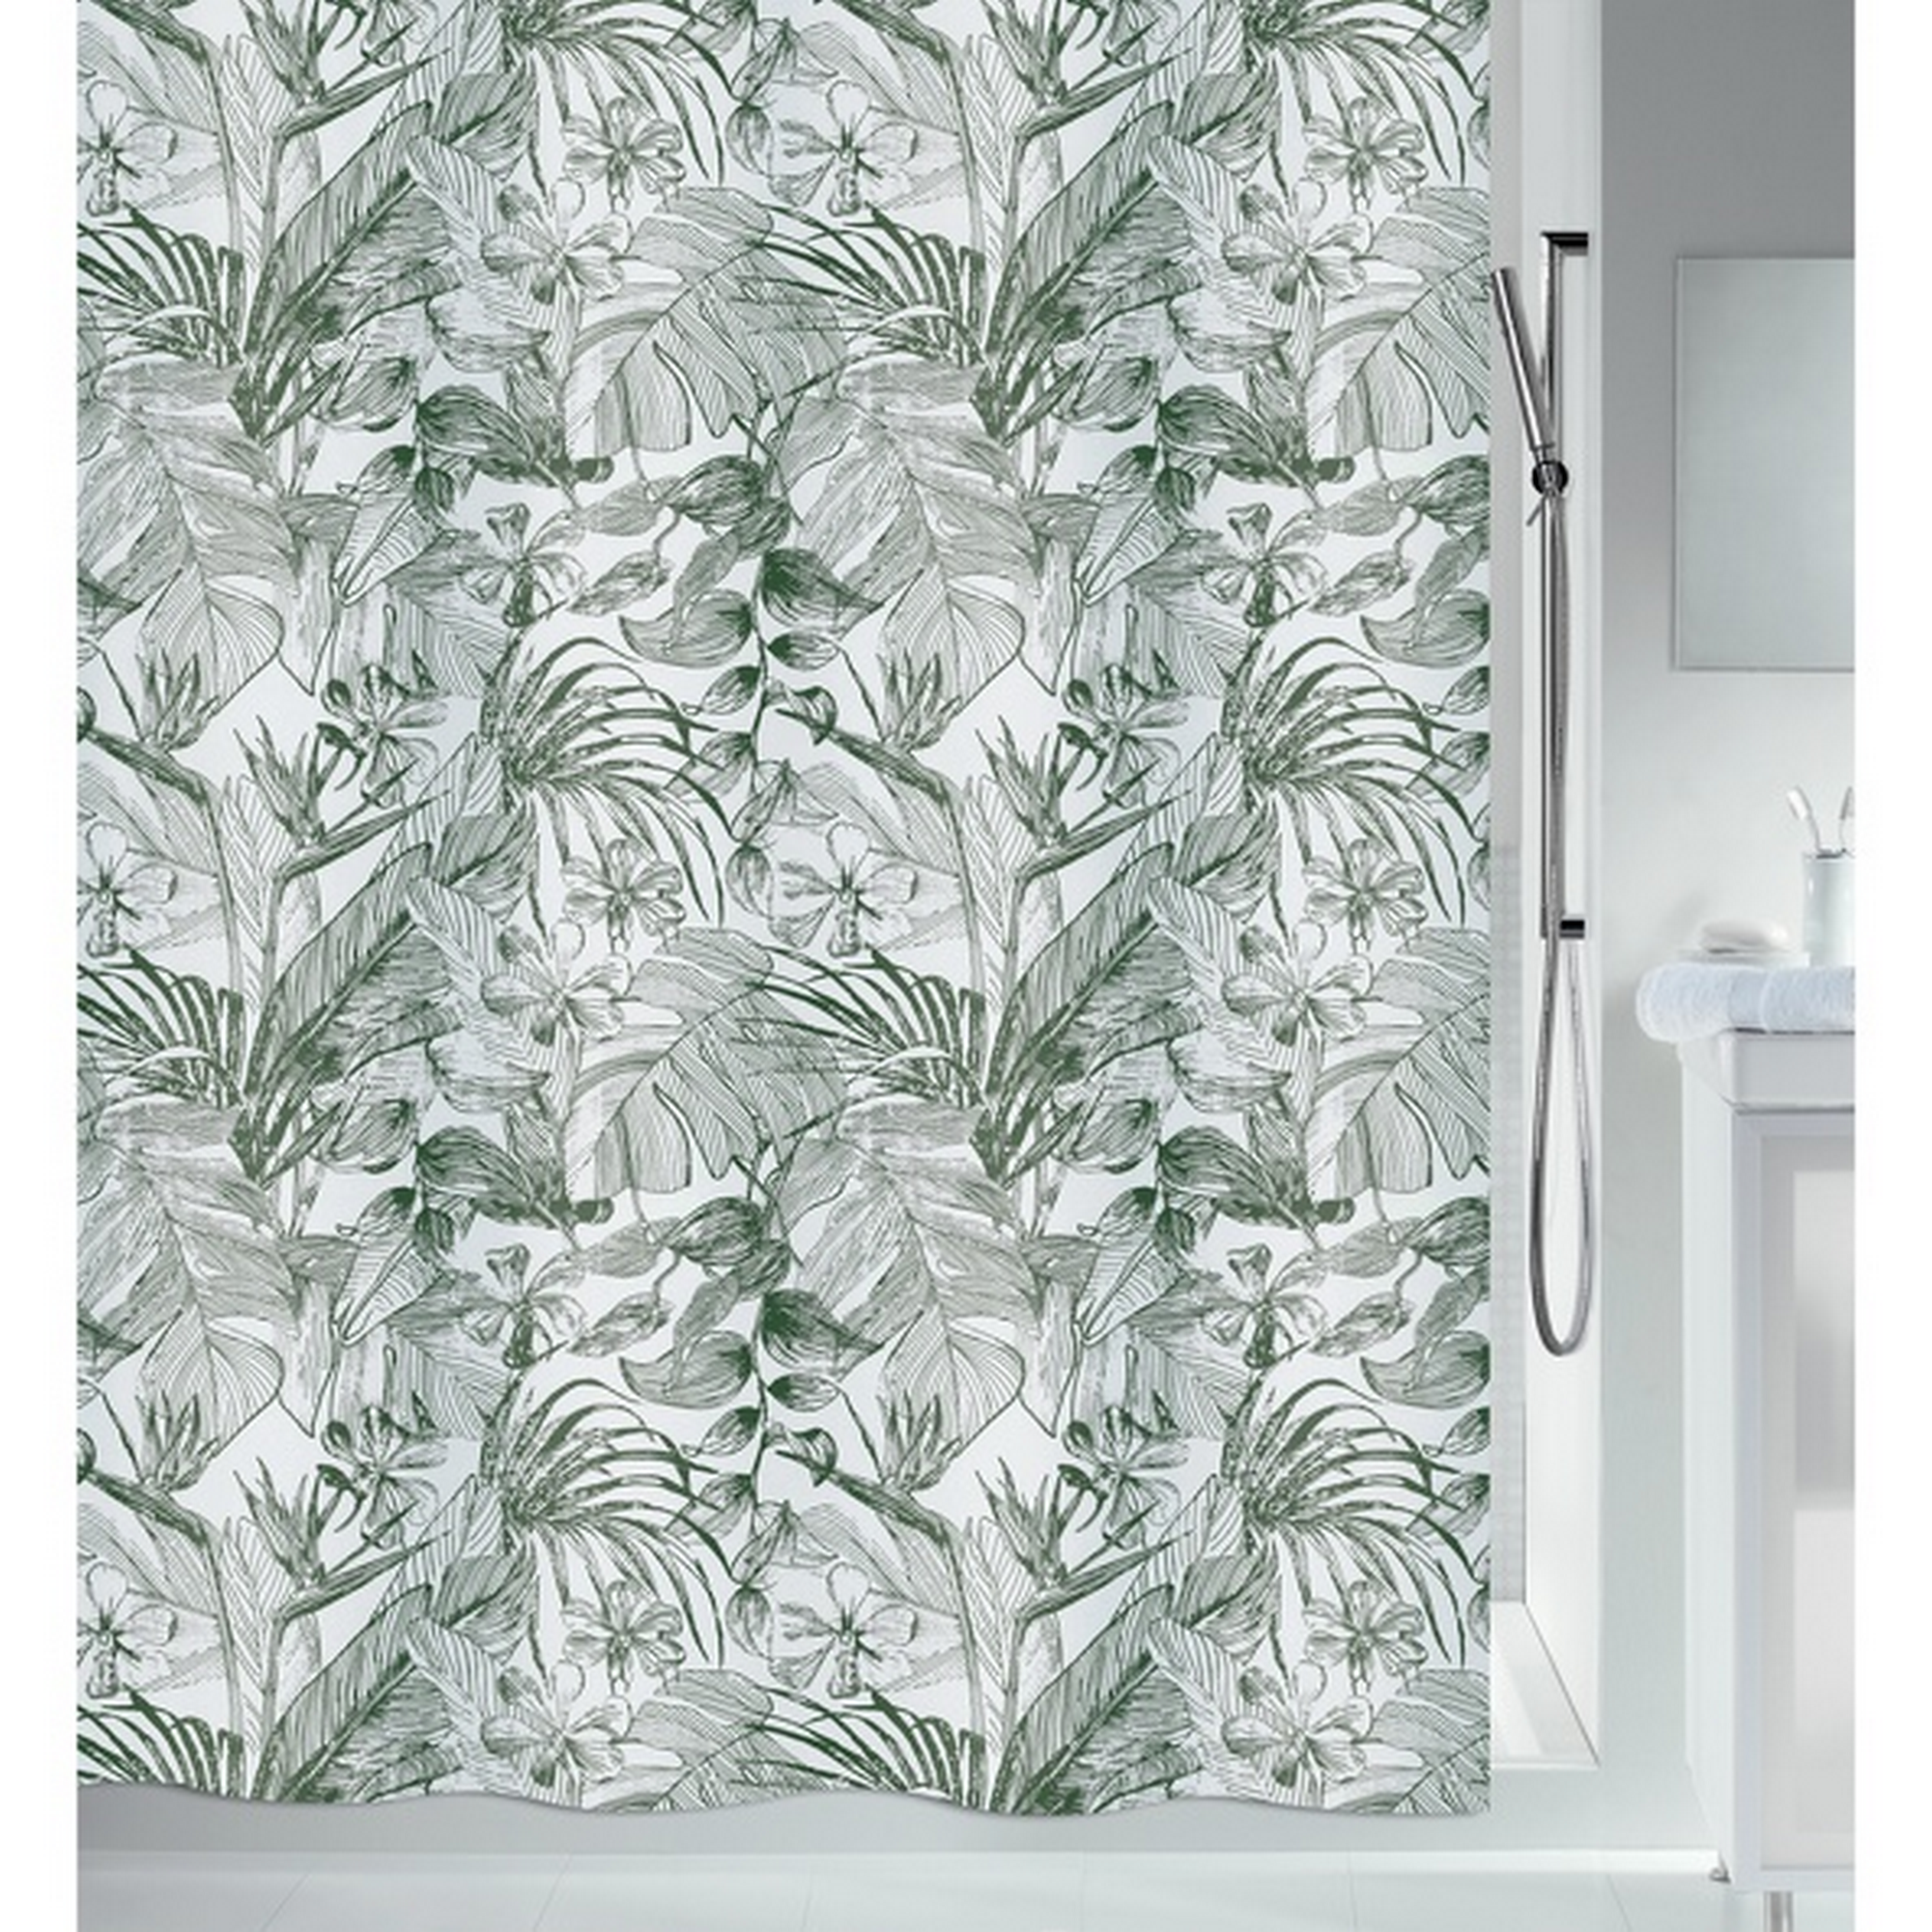 Duschvorhang 'Tropic' Textil grün/weiß 180 x 200 cm + product picture